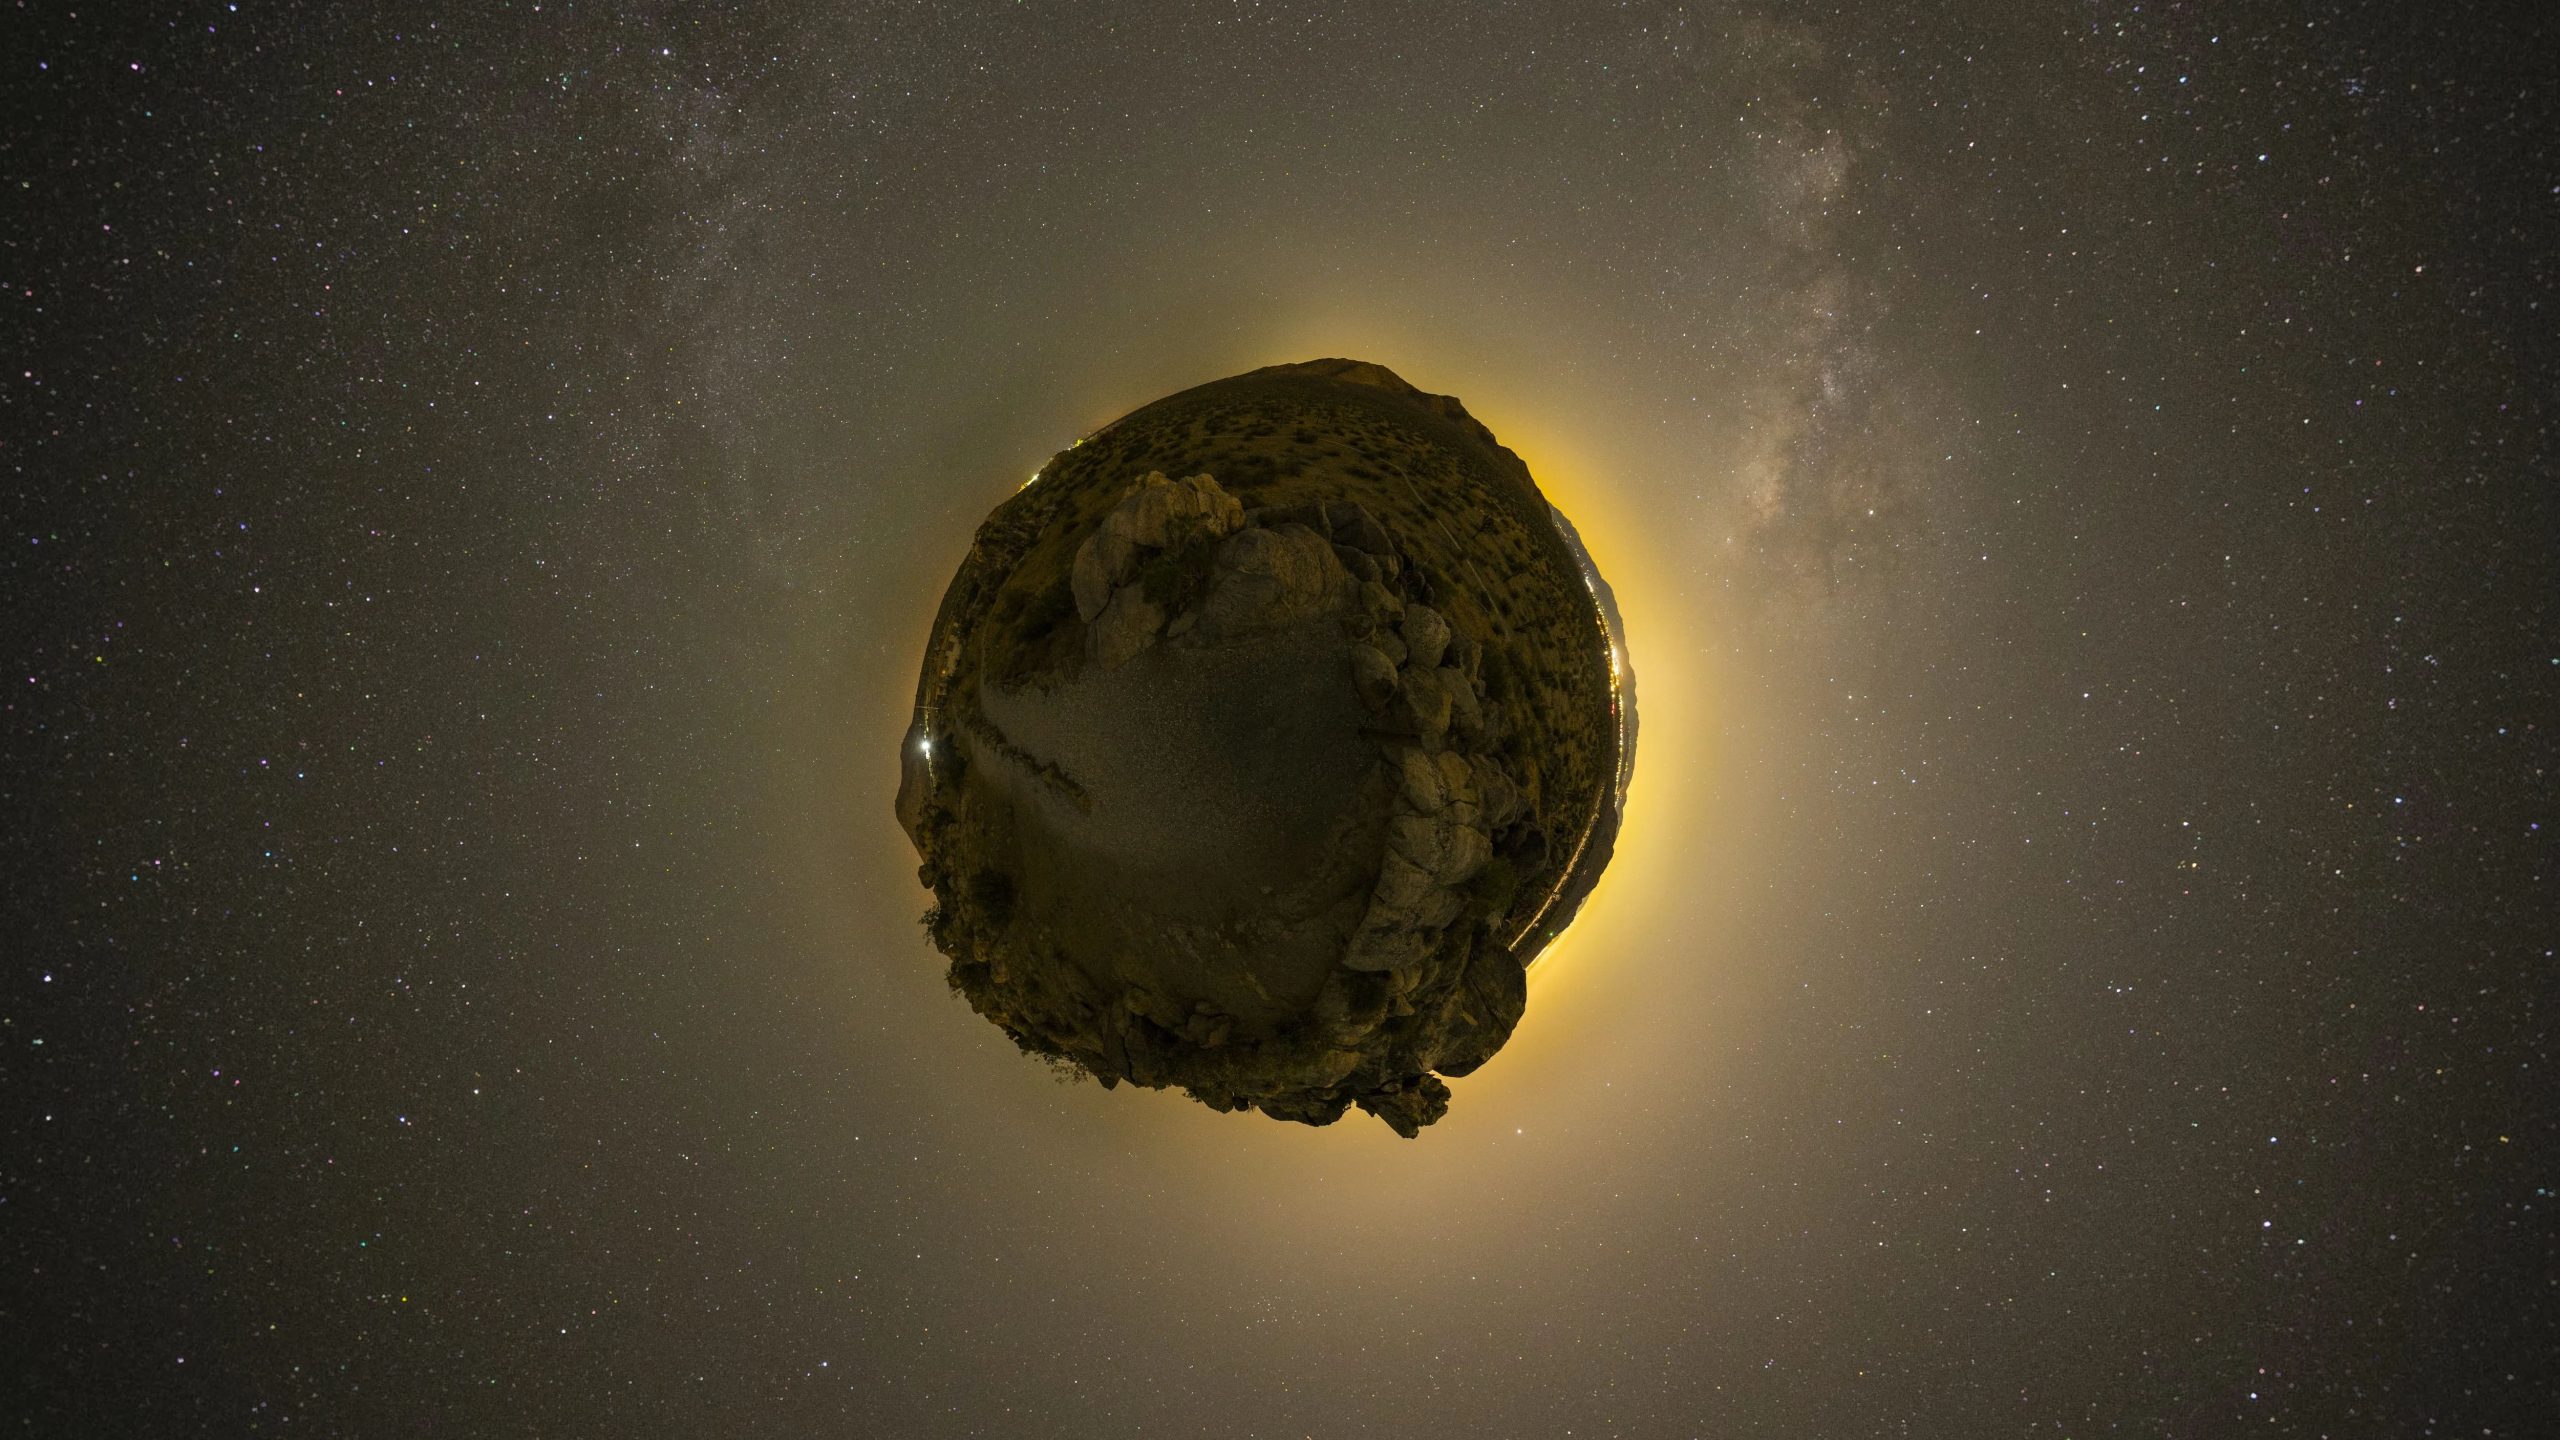 ‘Potentially hazardous’ asteroid to enter Earth’s orbit next week: NASA